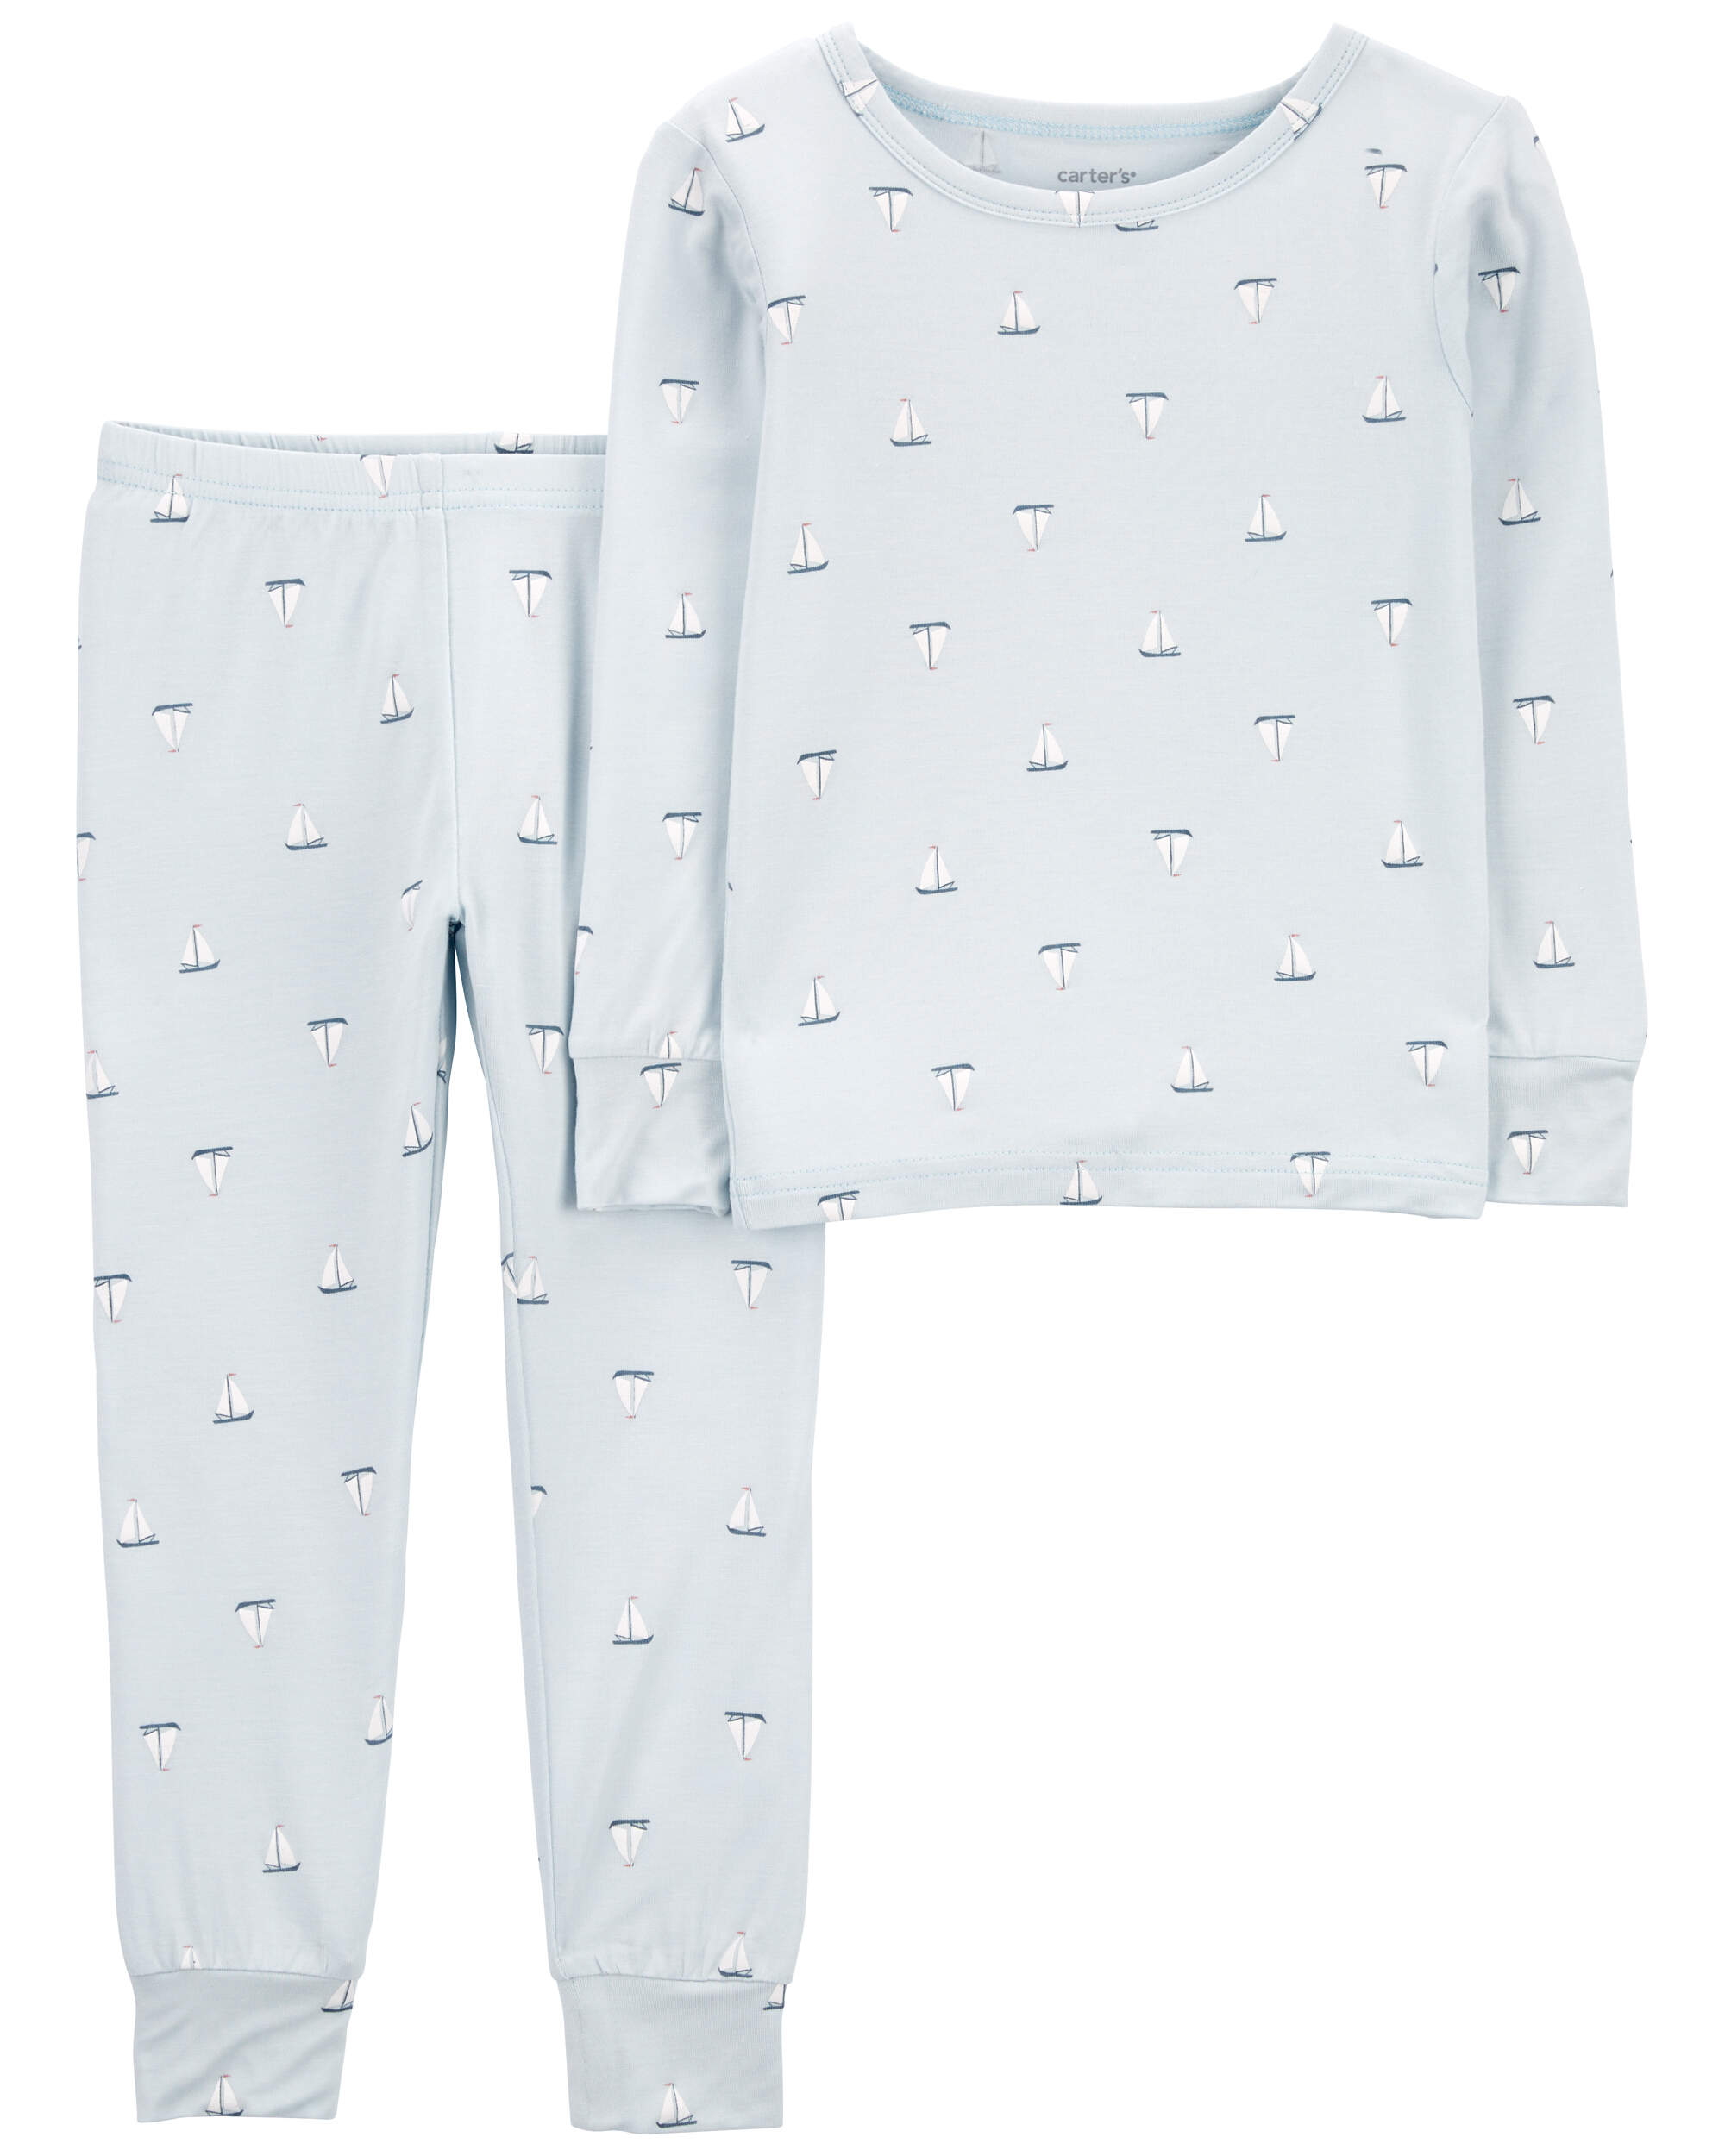 Toddler 2-Piece Sailboat PurelySoft Pajamas